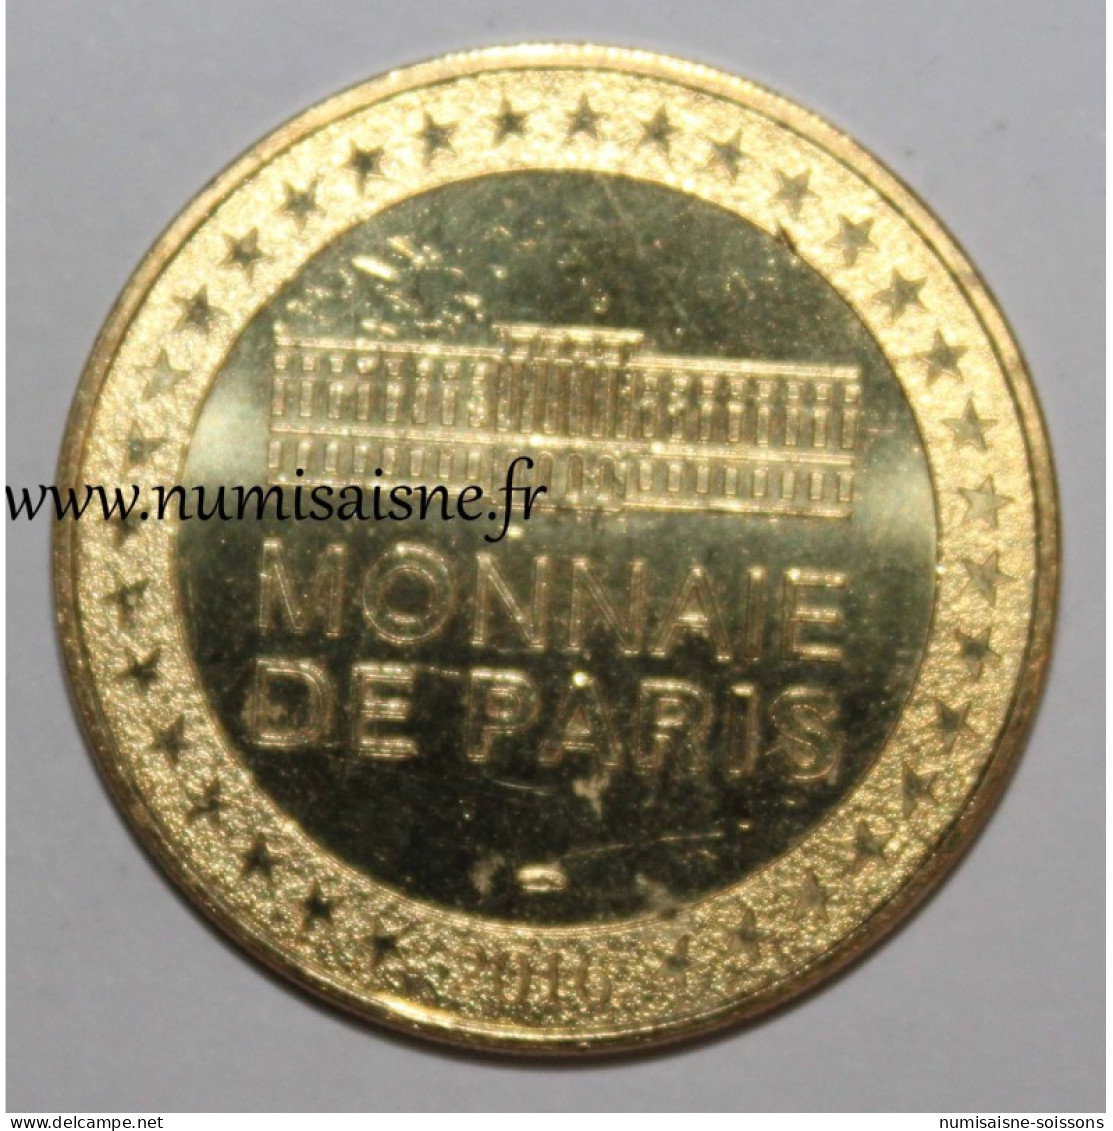 75 - PARIS - CONCOURS LÉPINE - 115 ANS - Monnaie De Paris - 2016 - 2016